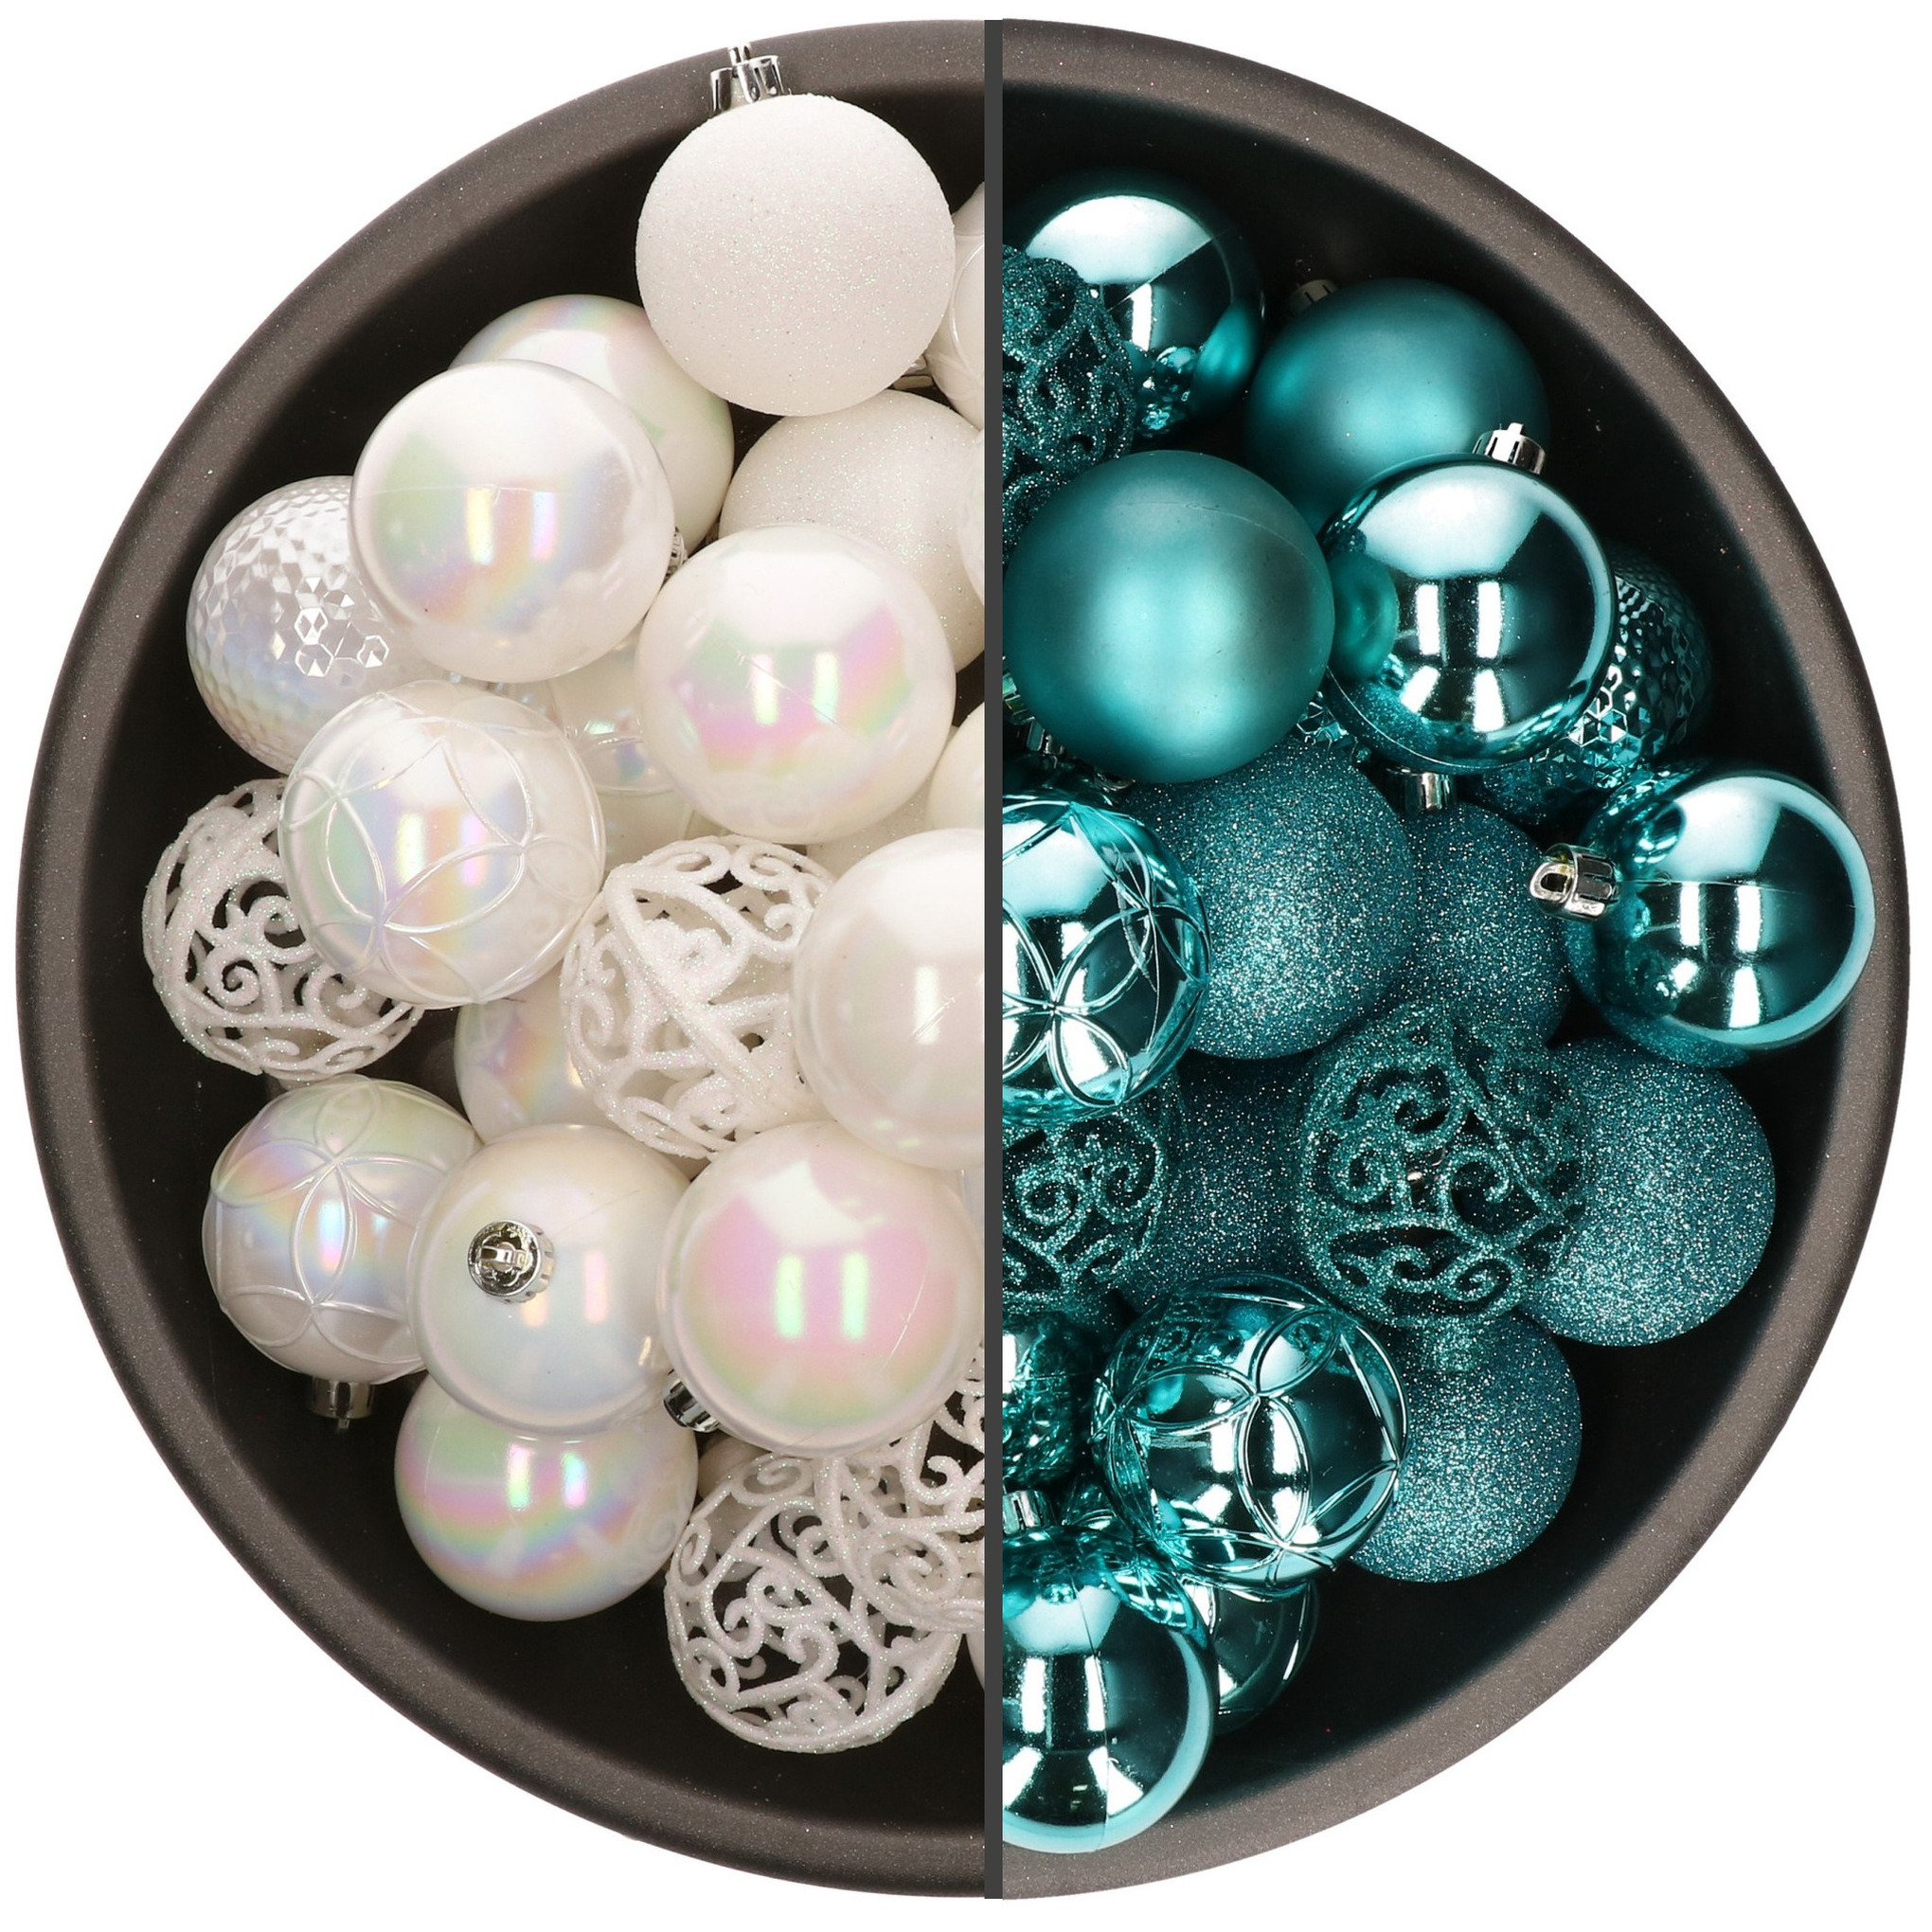 74x stuks kunststof kerstballen mix van parelmoer wit en turquoise blauw 6 cm